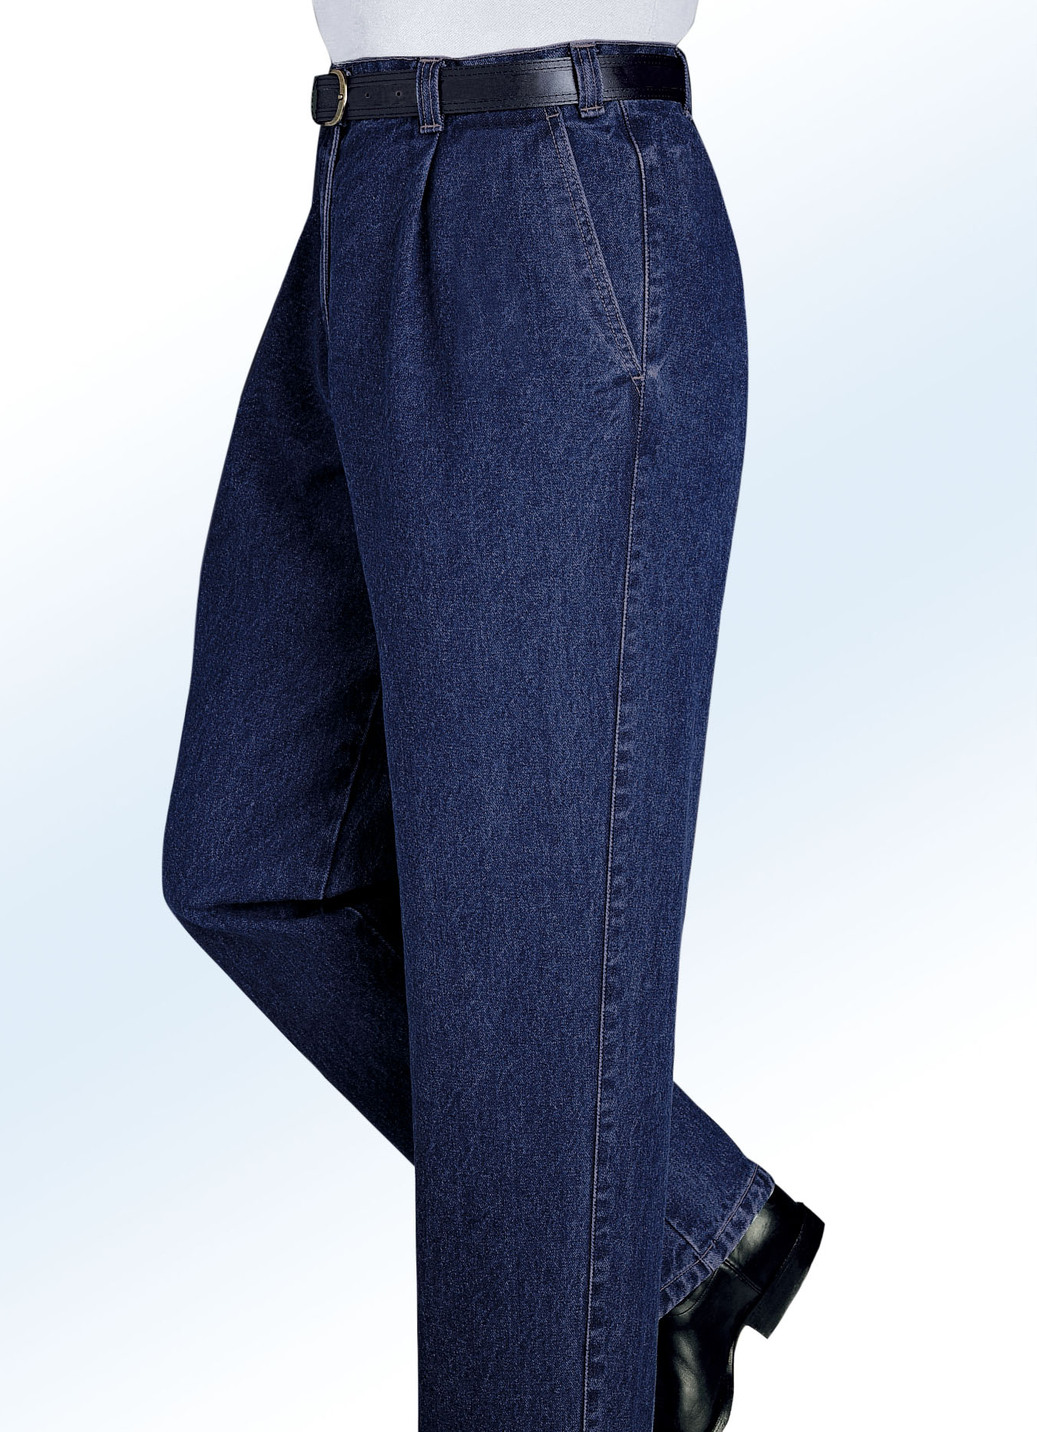 "Francesco Botti"-Jeans in 2 Qualitäten und 3 Farben, Qualität 1.Qualität, Dunkeljeans, Größe 106 von FRANCESCO BOTTI